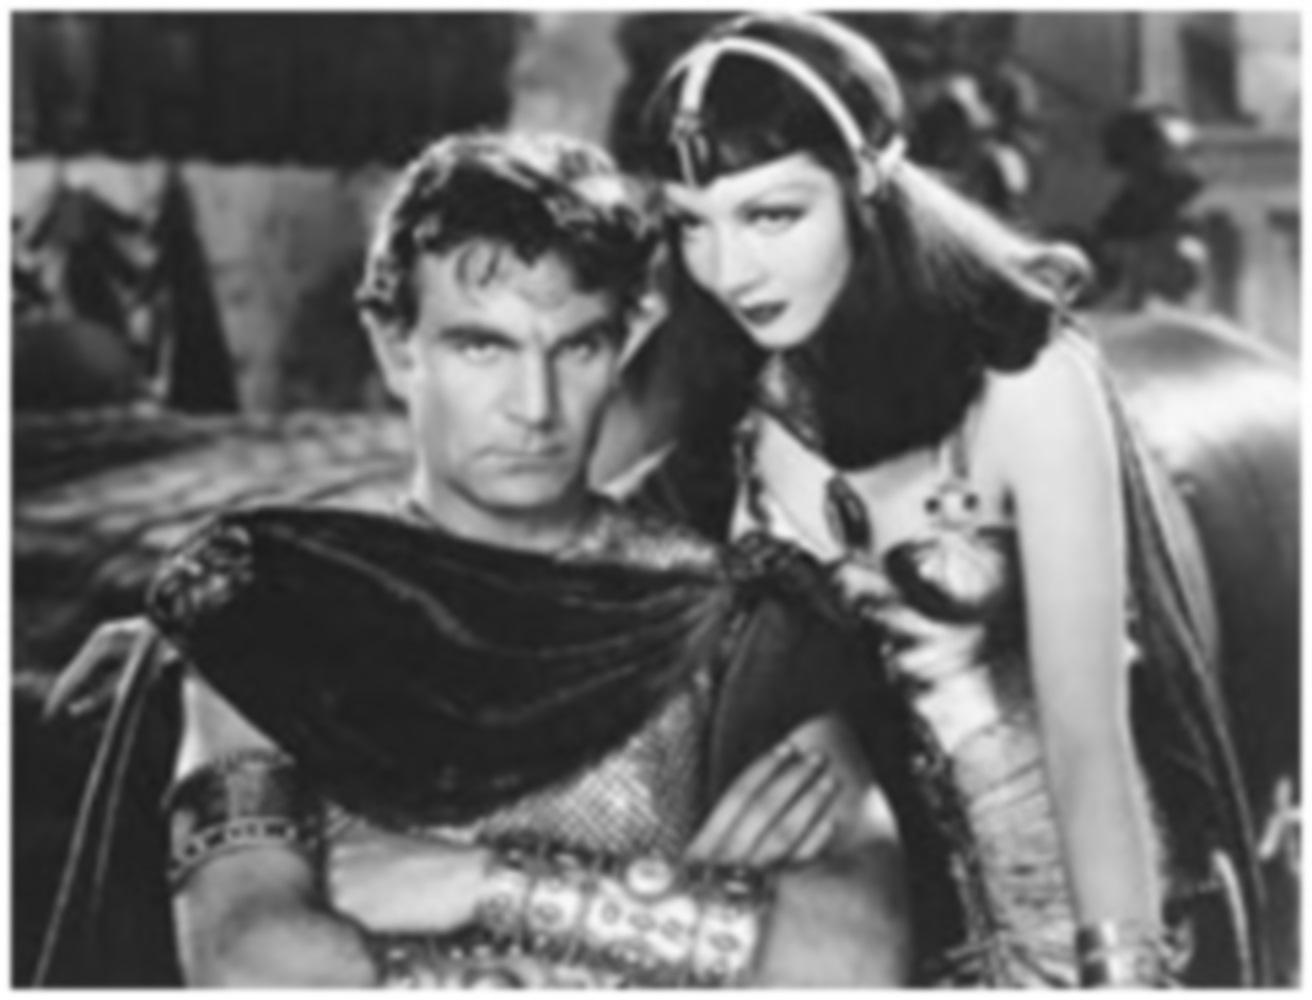 Mark Antony and Cleopatra